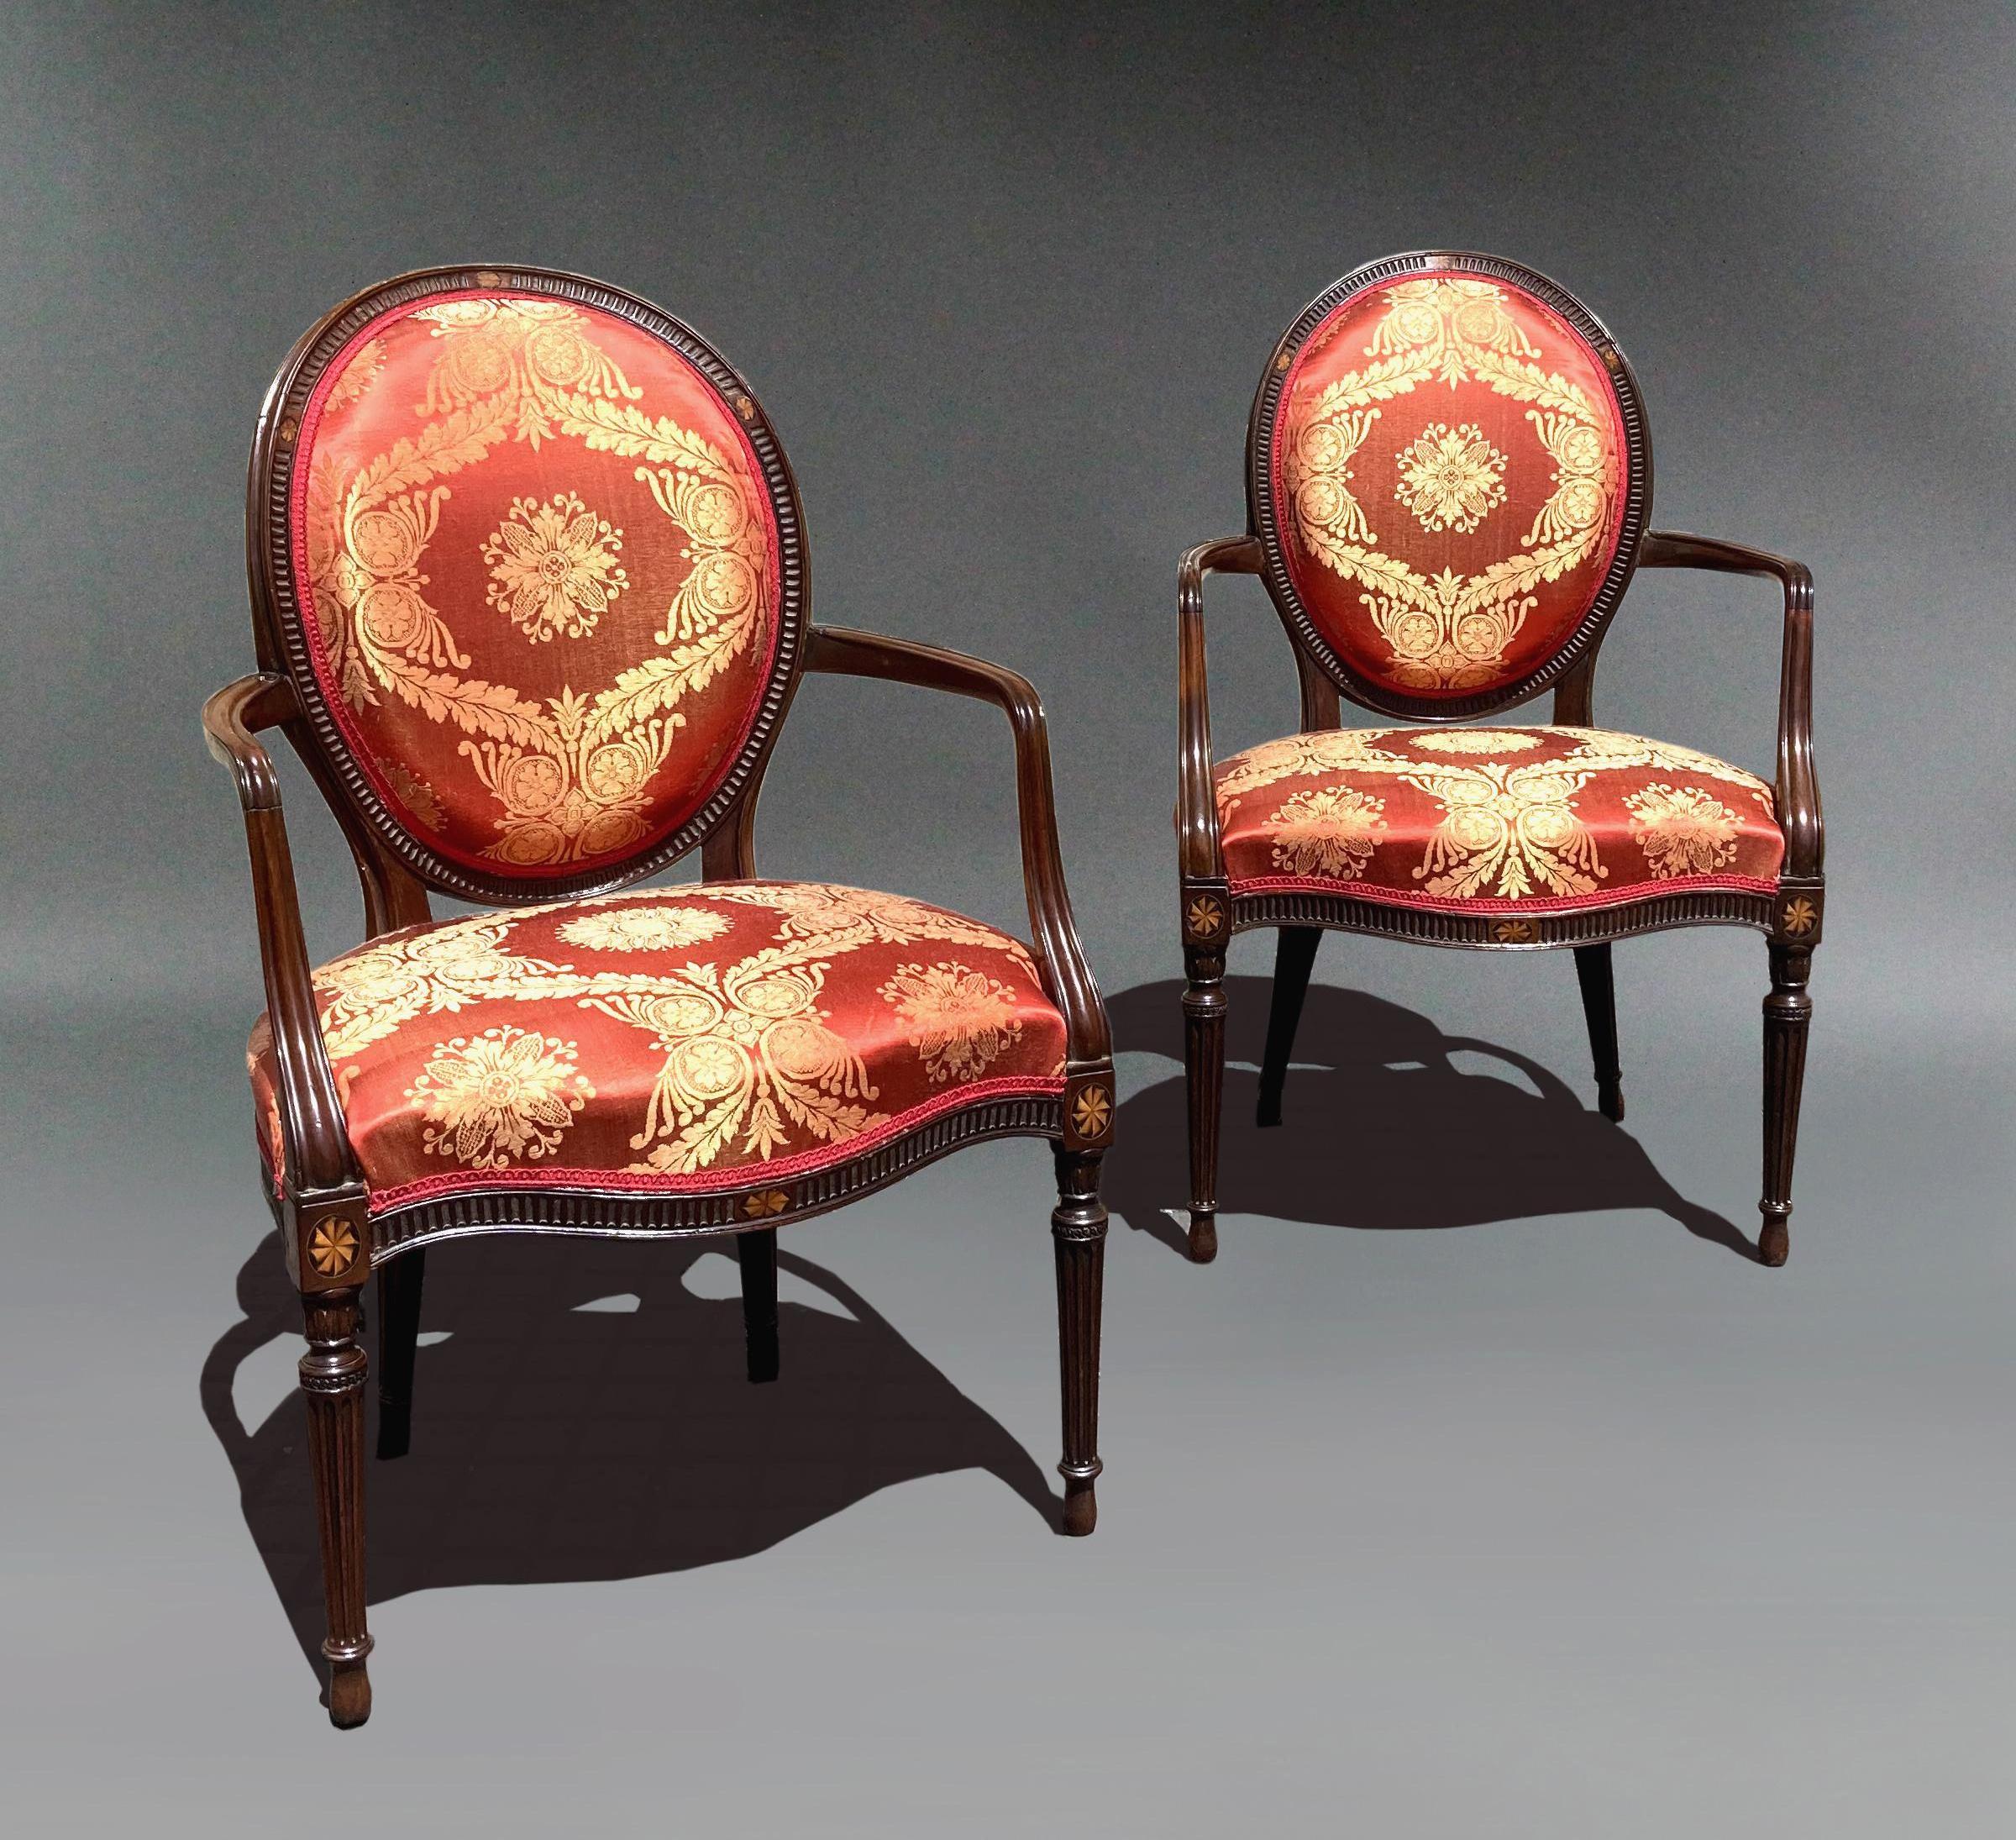 Paar Mahagoni-Sessel aus George III. mit rotem Damast; nach Art von John Linnell.
Die gepolsterten Rückenlehnen und Sitze sind mit rotem Seidendamast überzogen und durch geschwungene Arme verbunden. Die serpentinenförmigen Schienen und ovalen